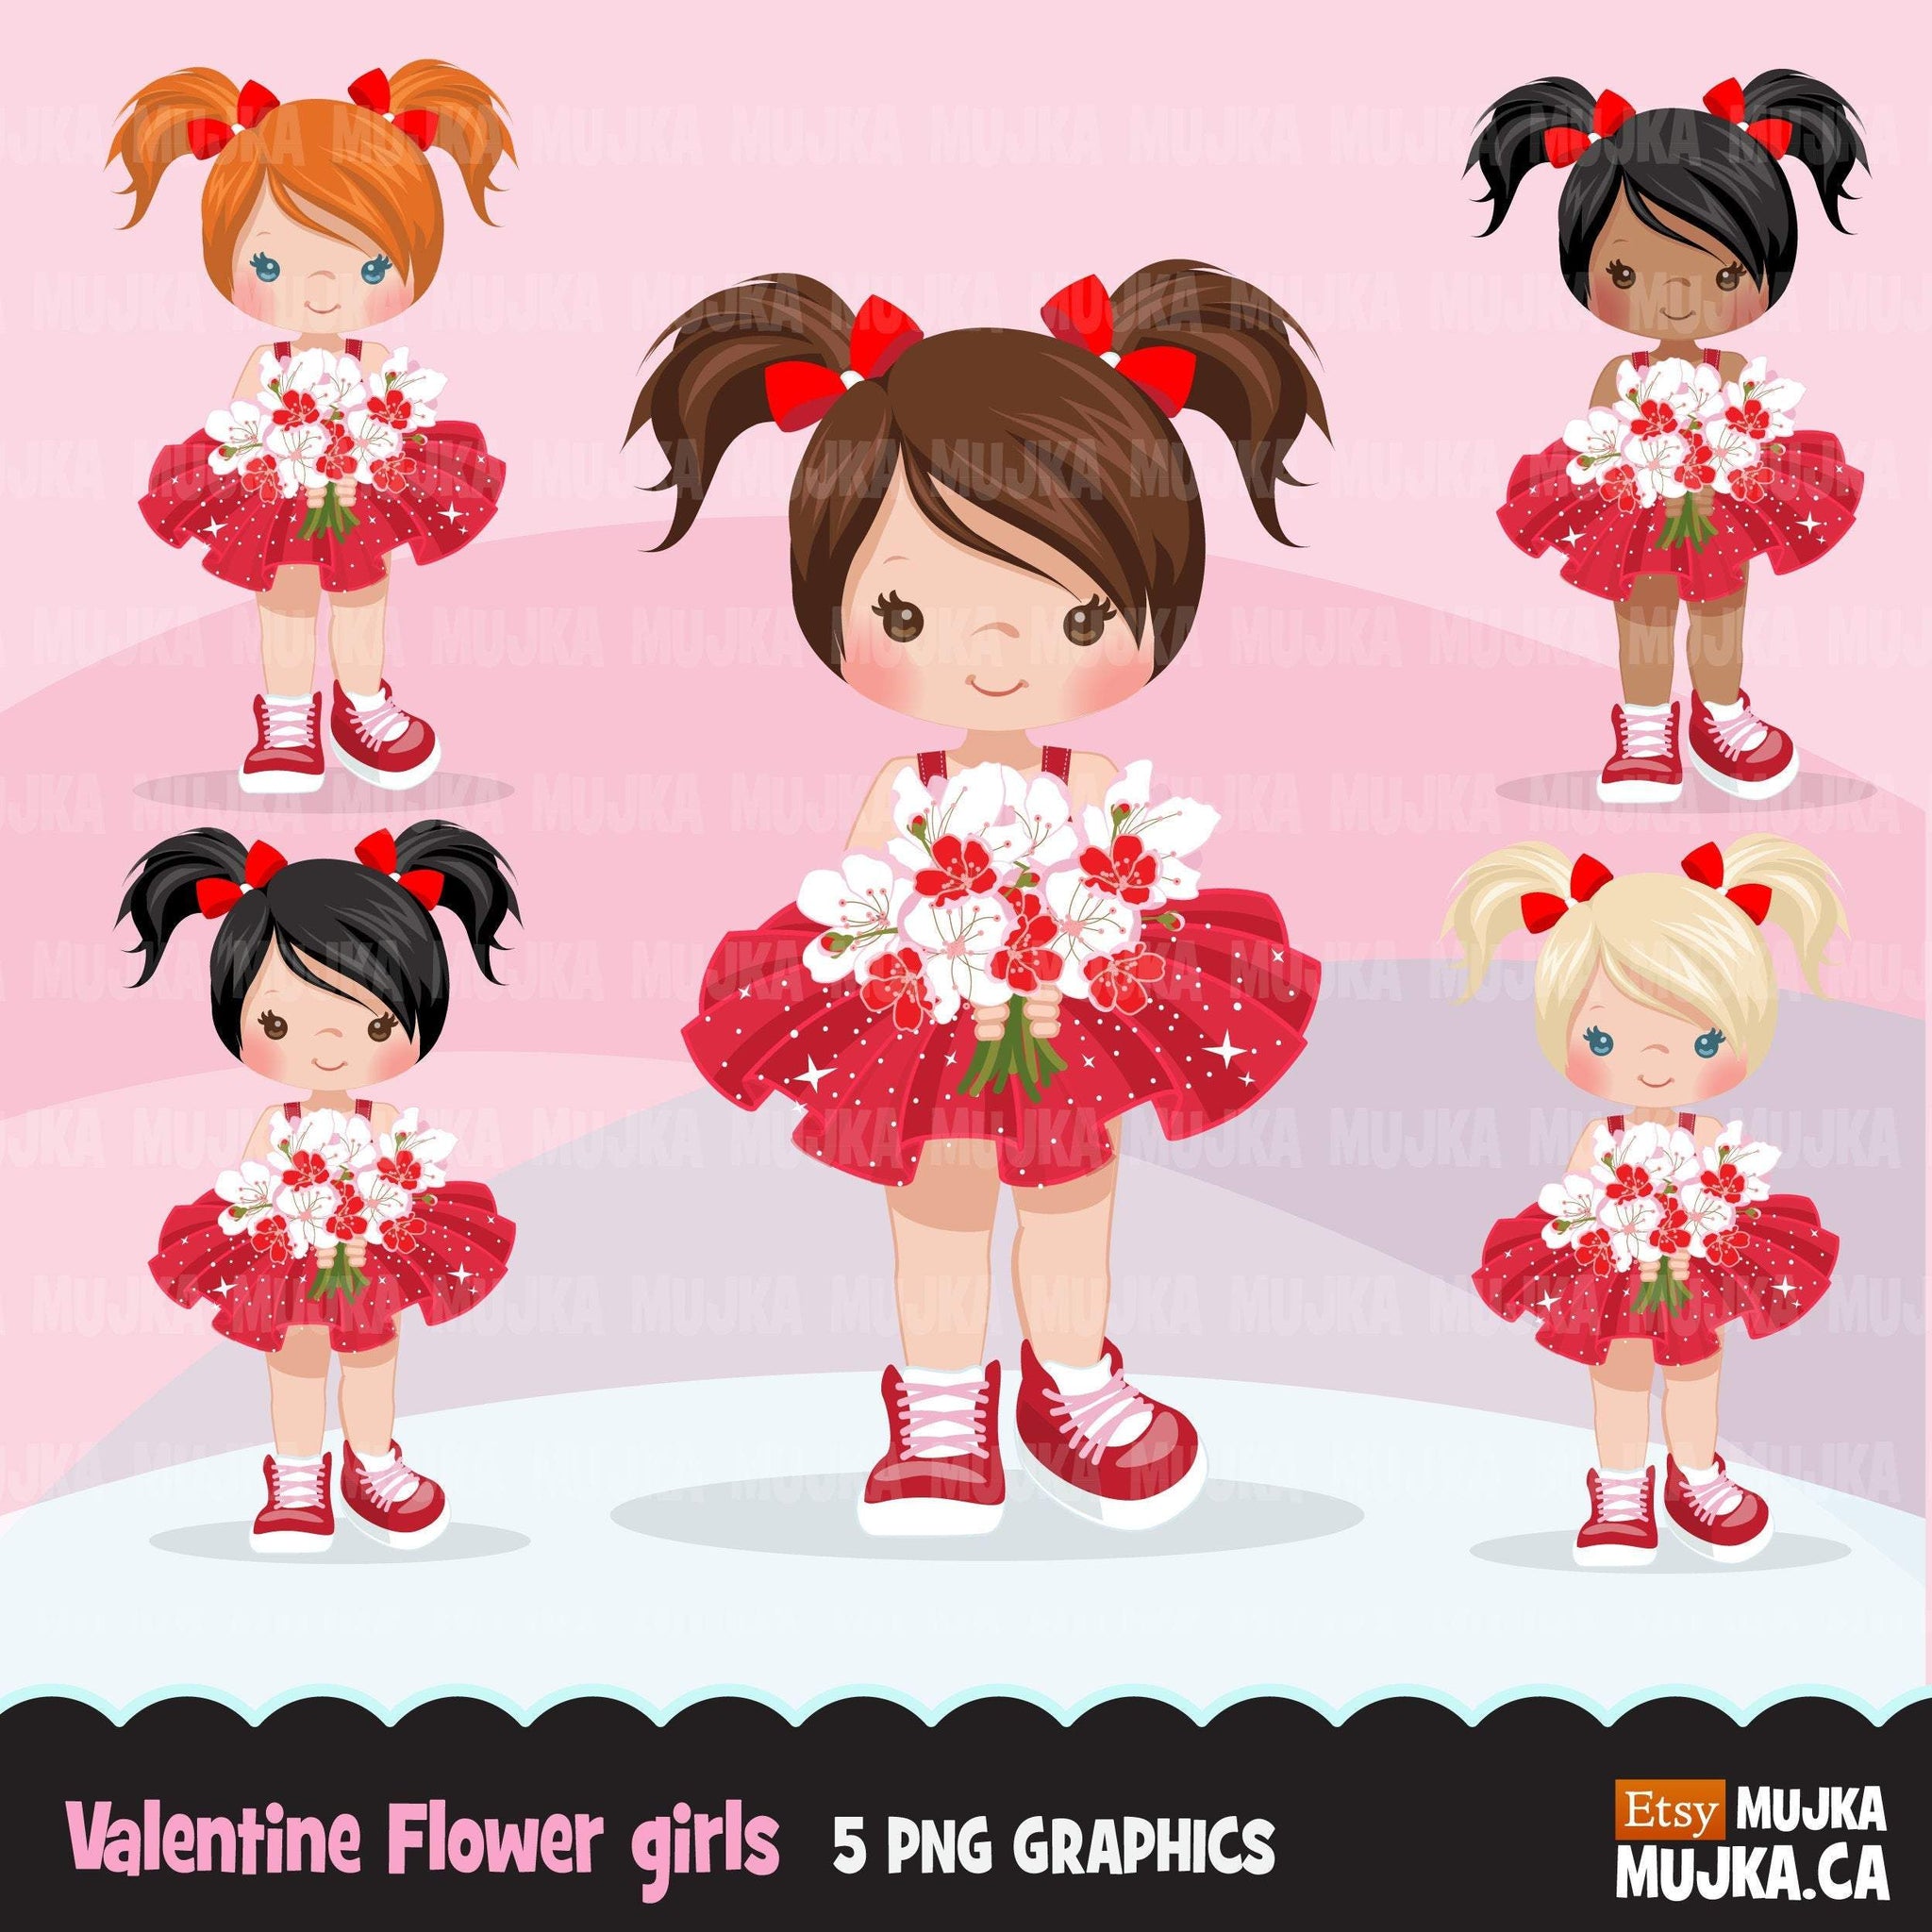 Imágenes prediseñadas de la niña de las flores del Día de San Valentín, chicas de cola de cerdo de tutú rojo con gráficos de ramo de flores, imágenes prediseñadas de San Valentín de uso comercial